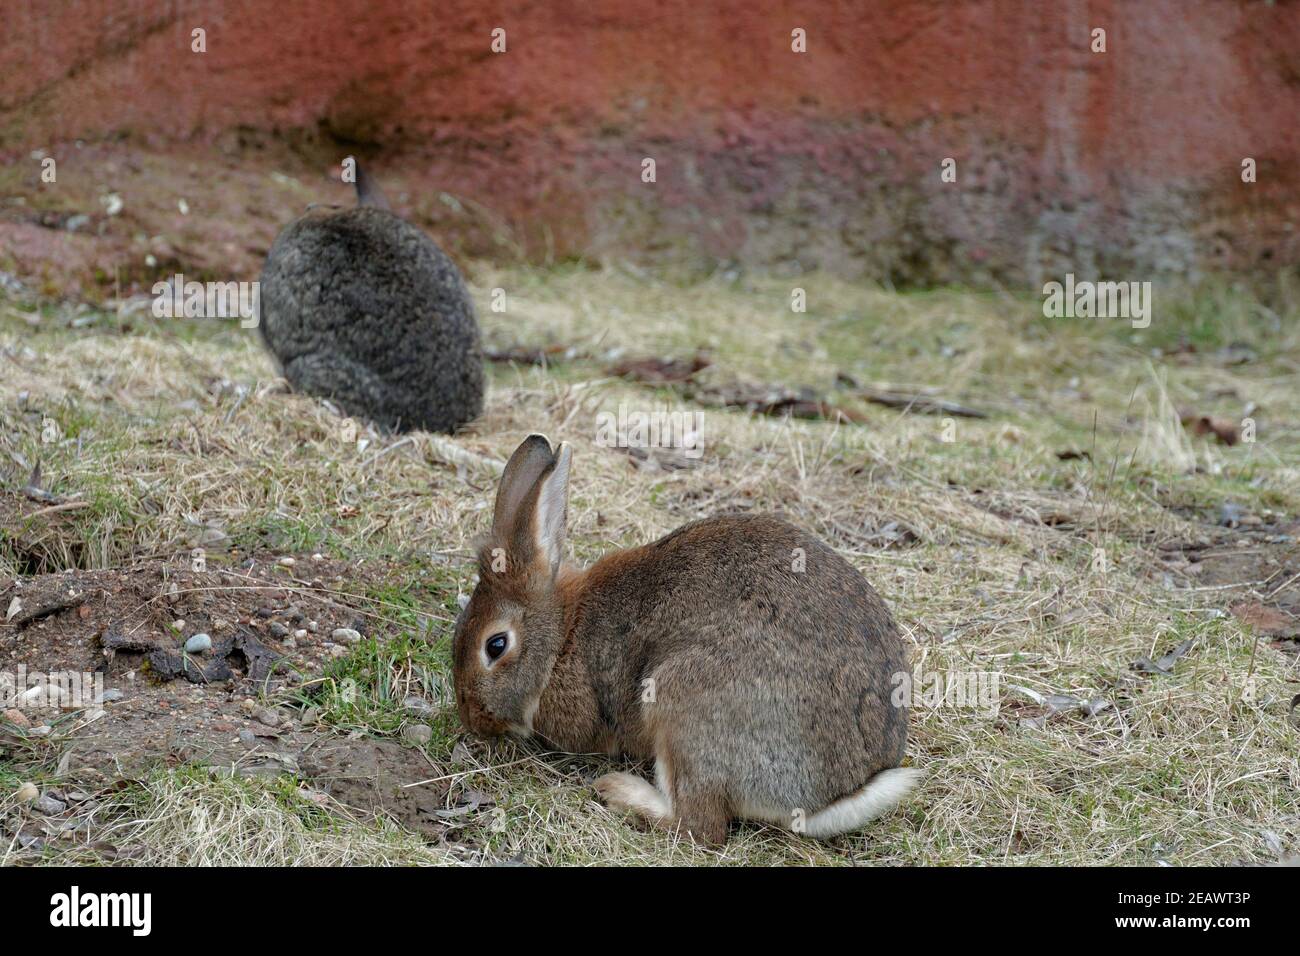 Conejo europeo en vista lateral o lateral, otro en el fondo. En latín se llaman Oryctolagus cuniculus y viven en cautiverio. Foto de stock